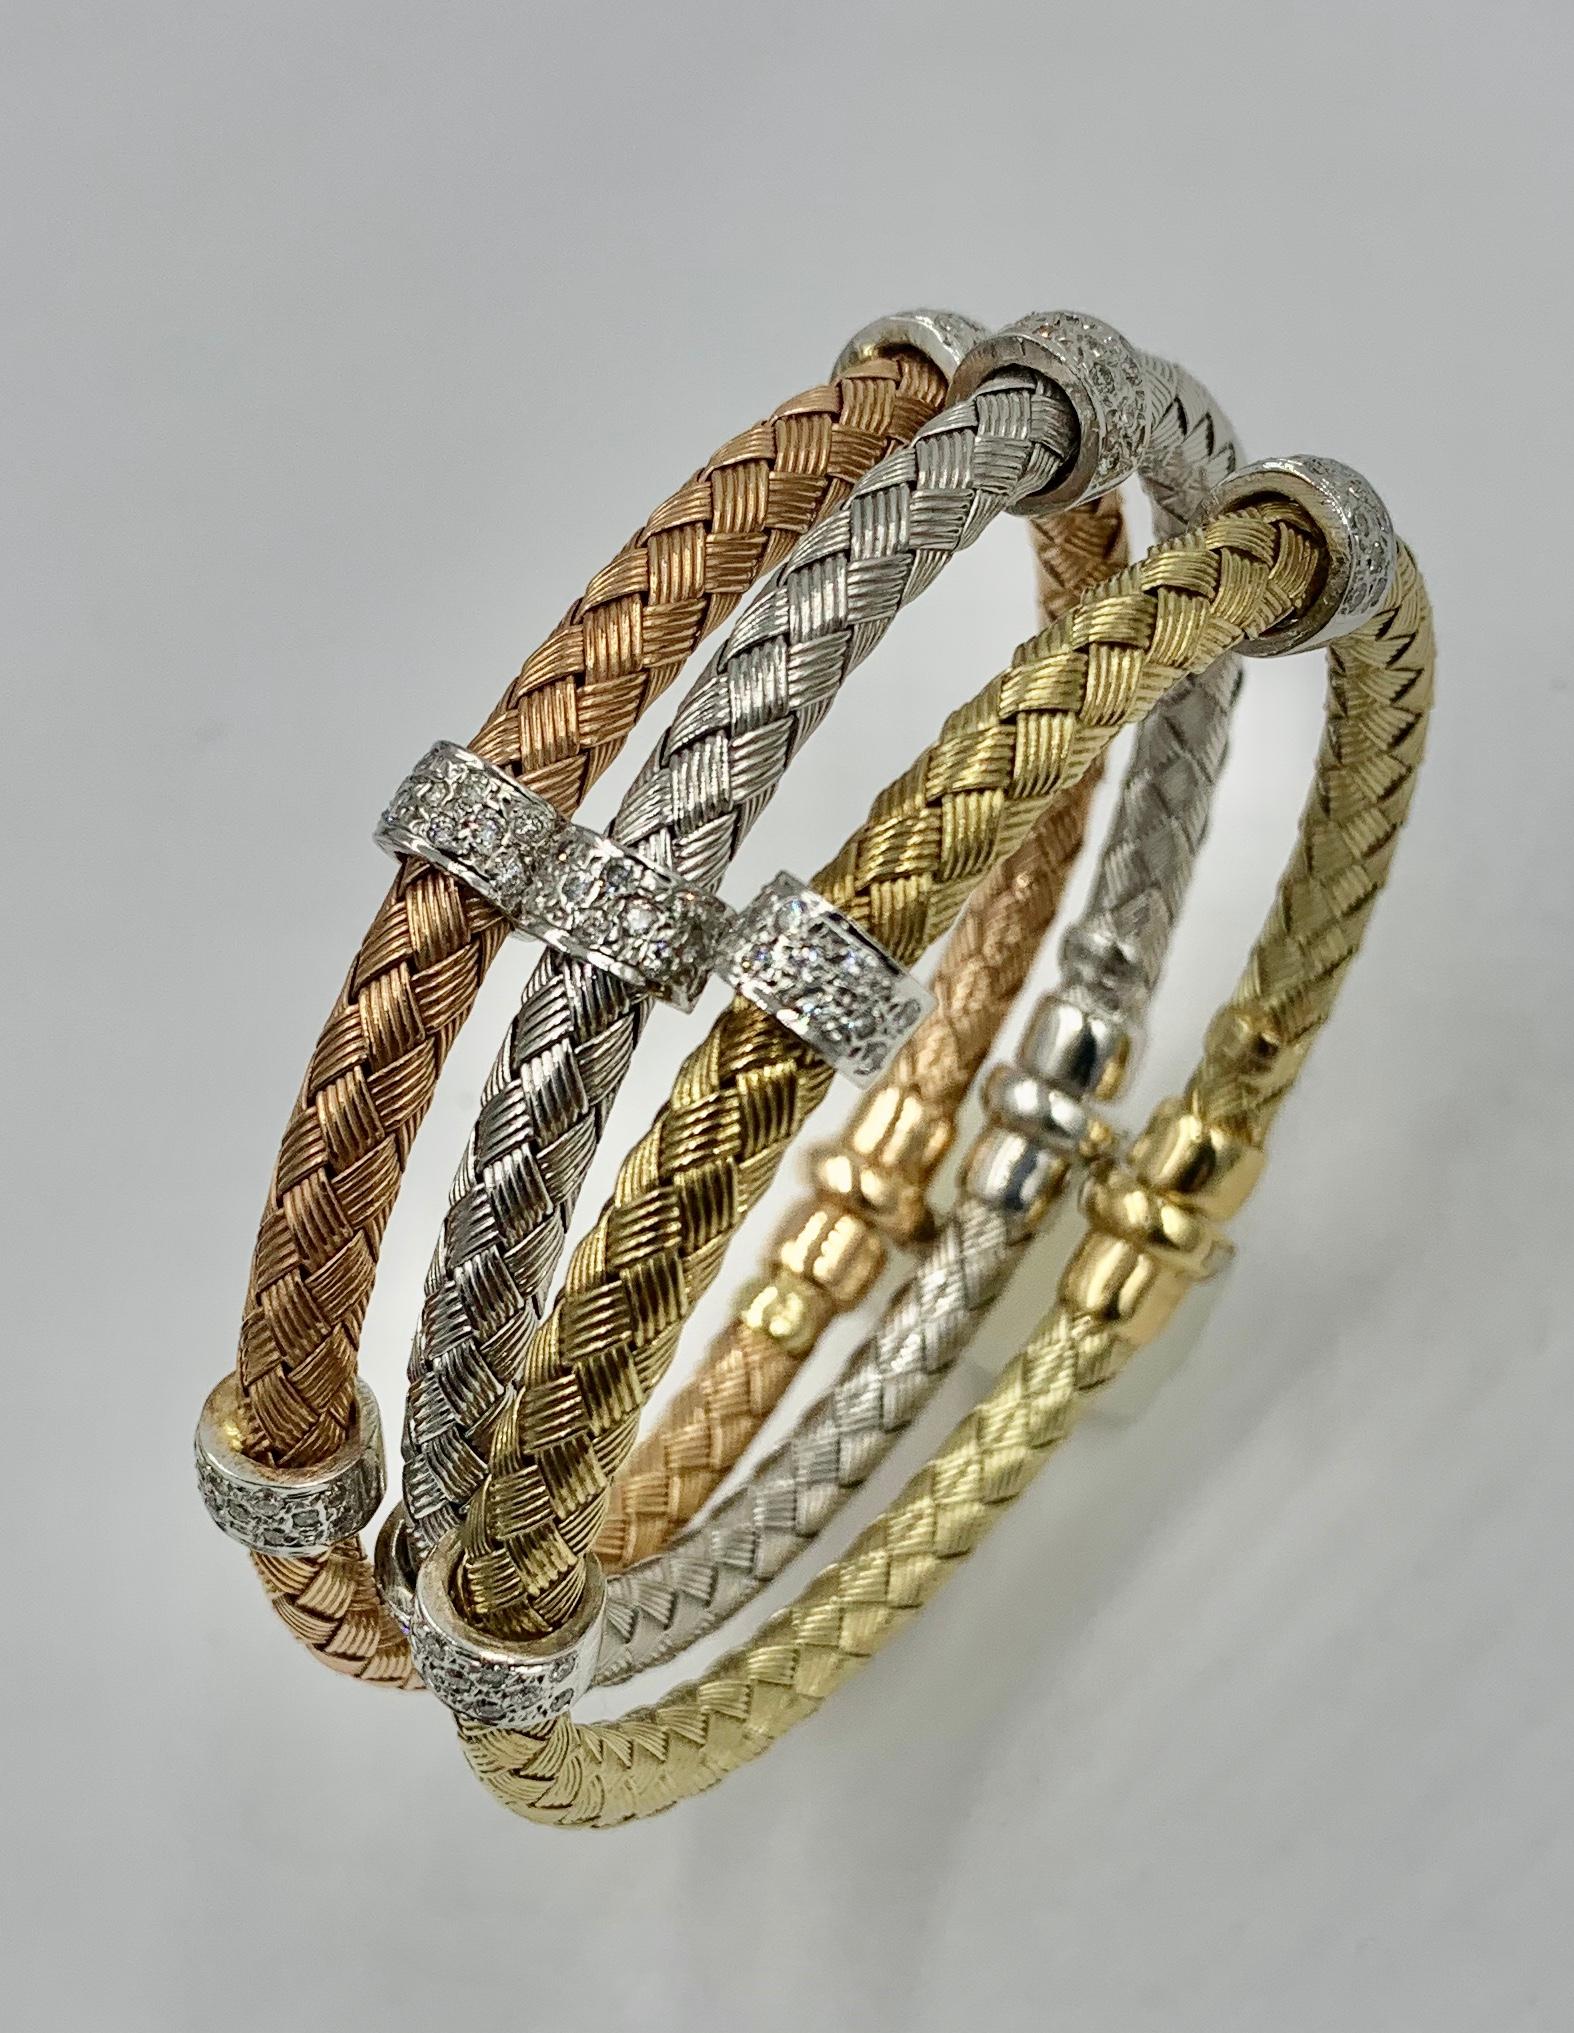 Un merveilleux et classique trio de trois bracelets tressés en or jaune, rose et blanc 14 carats, sertis de rondelles de diamants.  Les bracelets classiques à empiler sont italiens.  Ils présentent un superbe motif de câble tressé, un en or rose 14